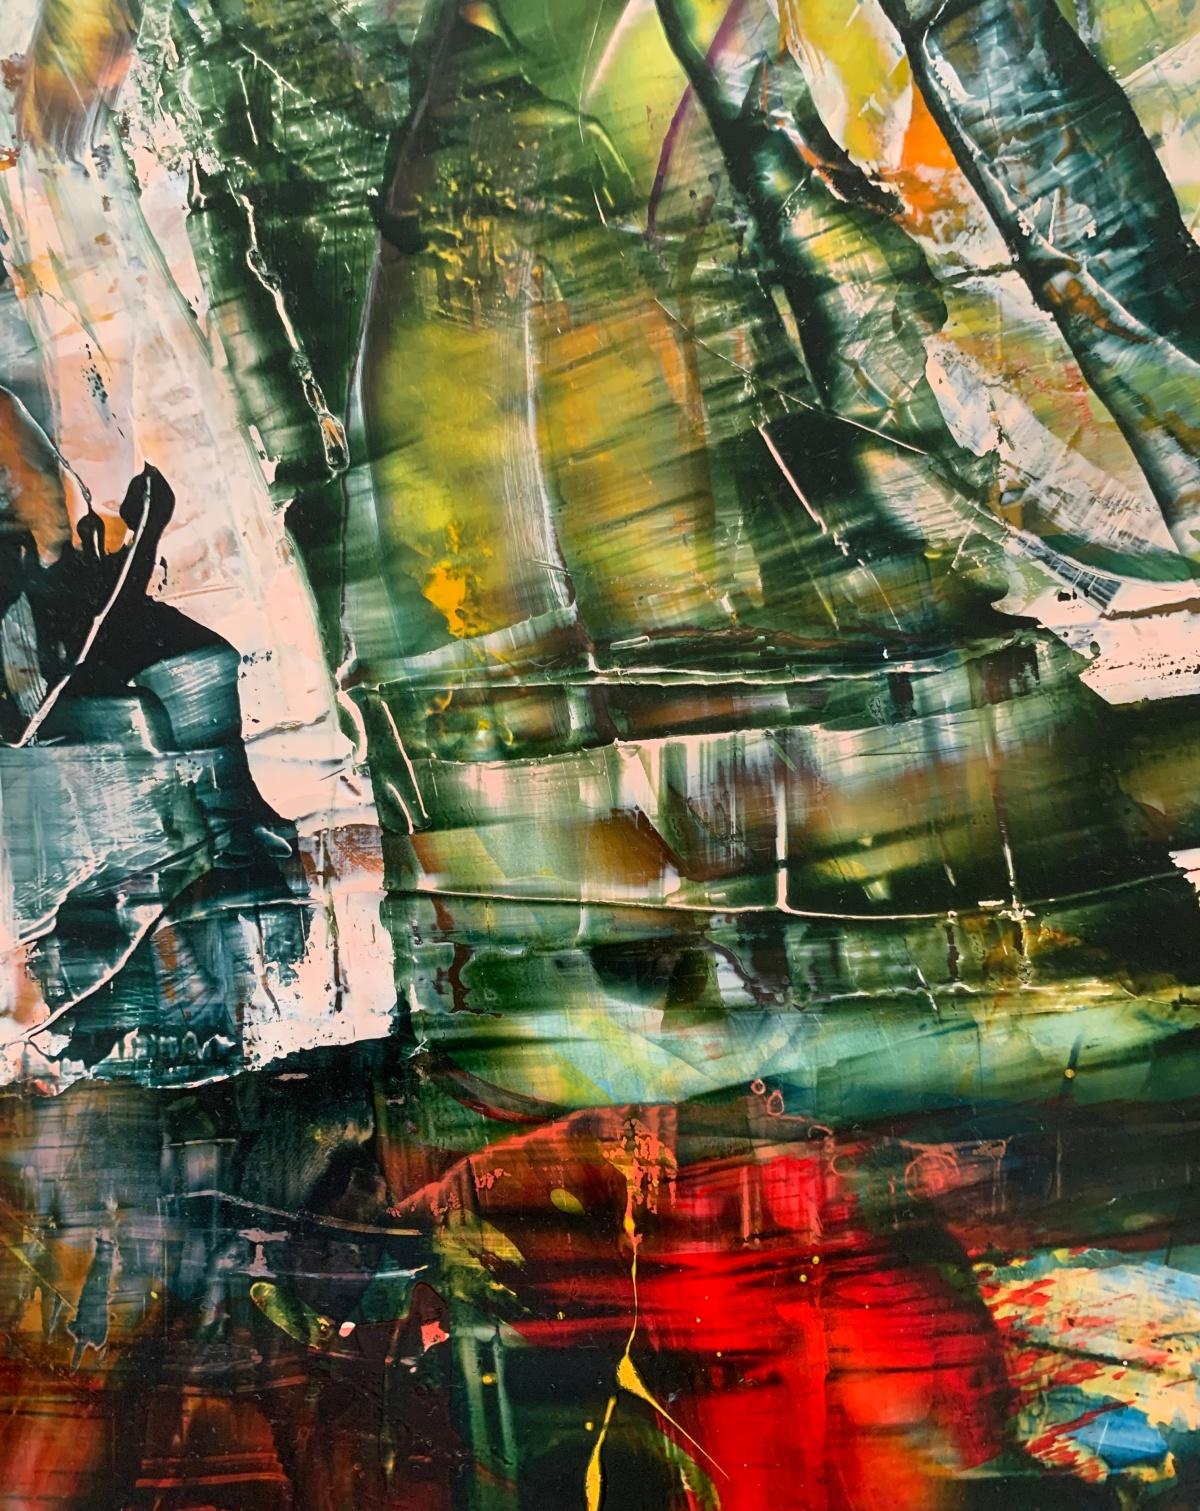 Peinture abstraite à l'acrylique sur panneau de styrène à haute résistance aux chocs de l'artiste polonaise vivant aux États-Unis, Monika Rossa. Les œuvres d'art sont colorées. Il peut être exposé verticalement ou horizontalement.

MONIKA ROSSA 
a